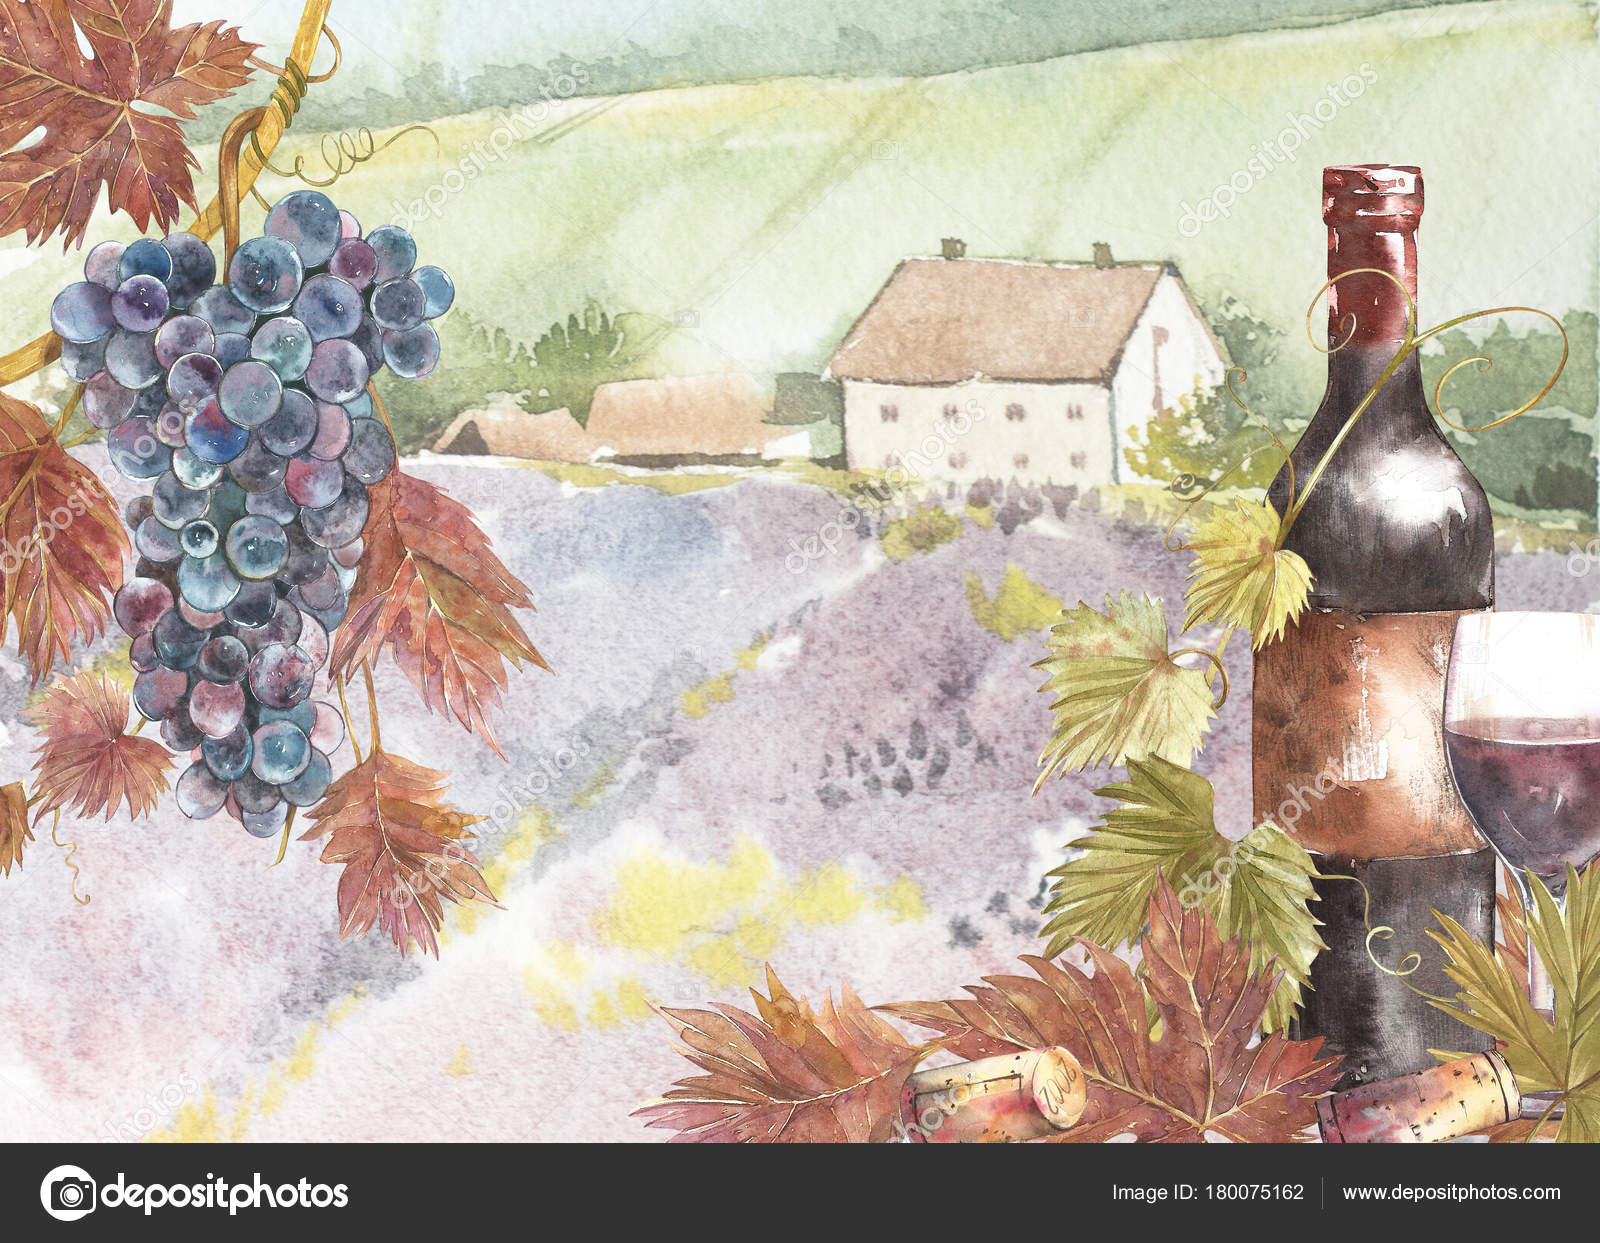 Risultati immagini per vino in bottiglia e sfondi di paesaggio immagini in jpg